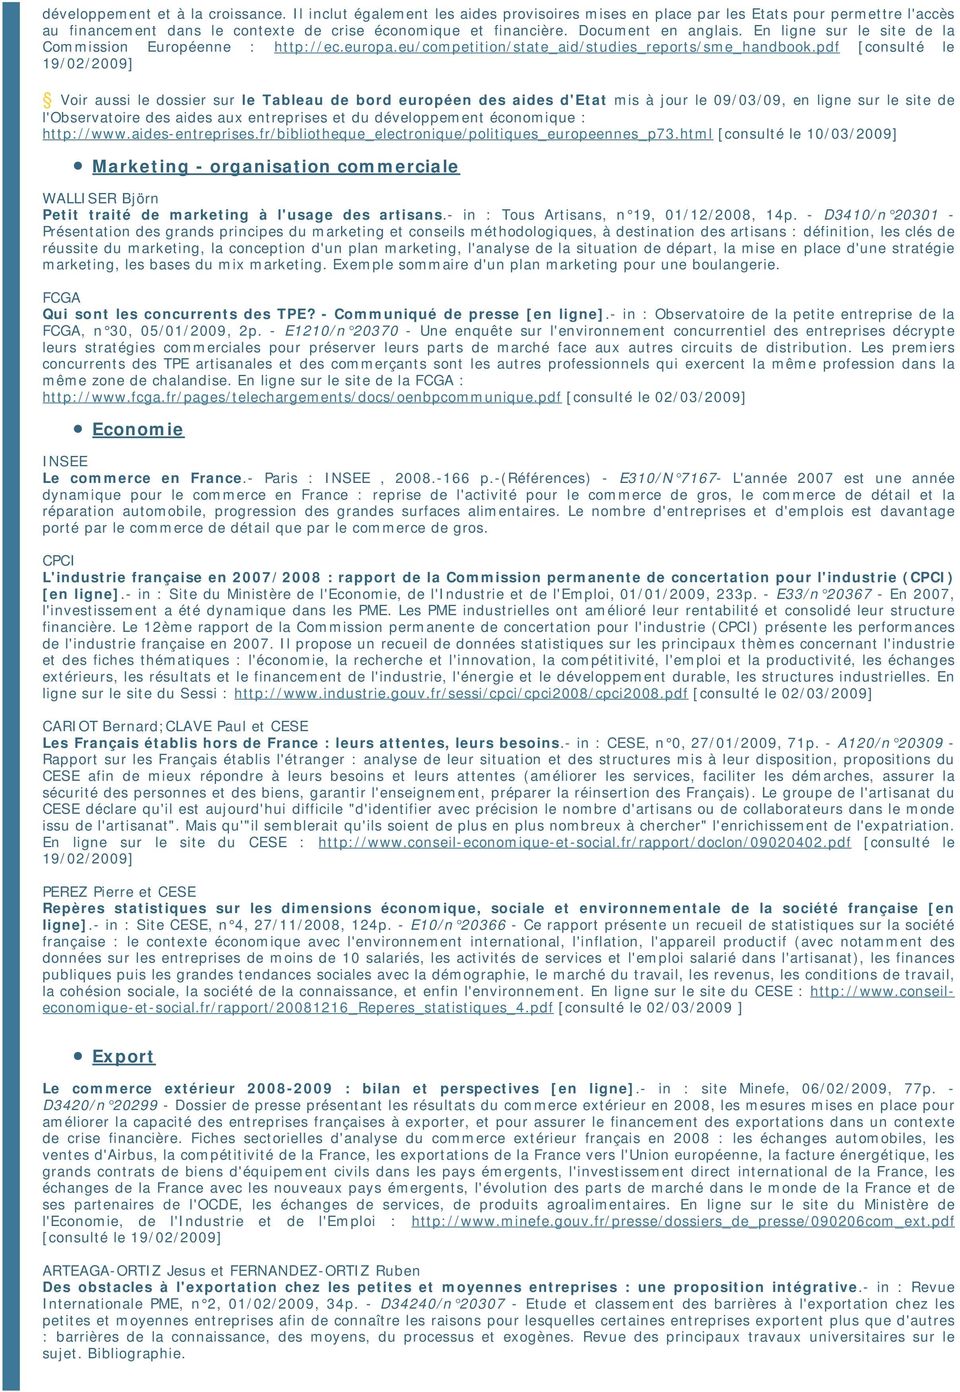 pdf [consulté le 19/02/2009] Voir aussi le dossier sur le Tableau de bord européen des aides d'etat mis à jour le 09/03/09, en ligne sur le site de l'observatoire des aides aux entreprises et du